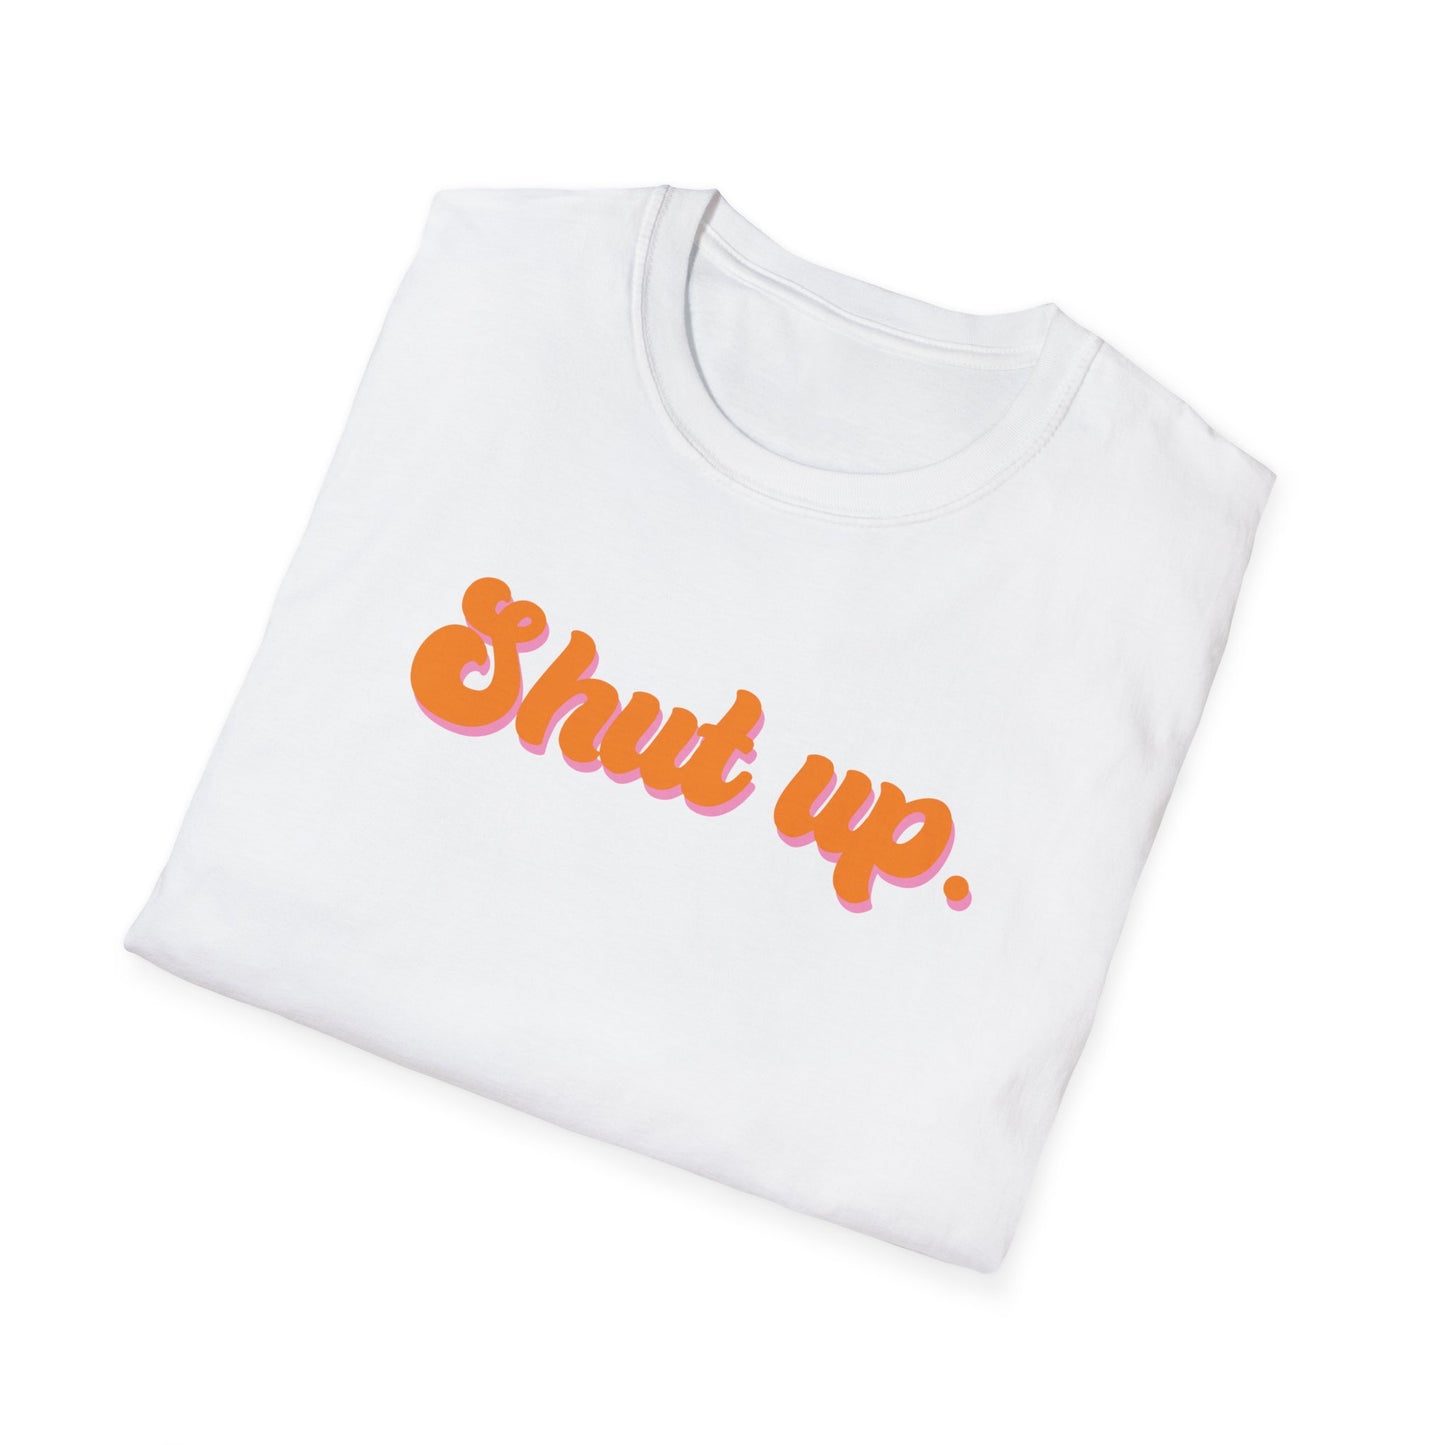 Shut up Unisex T-Shirt